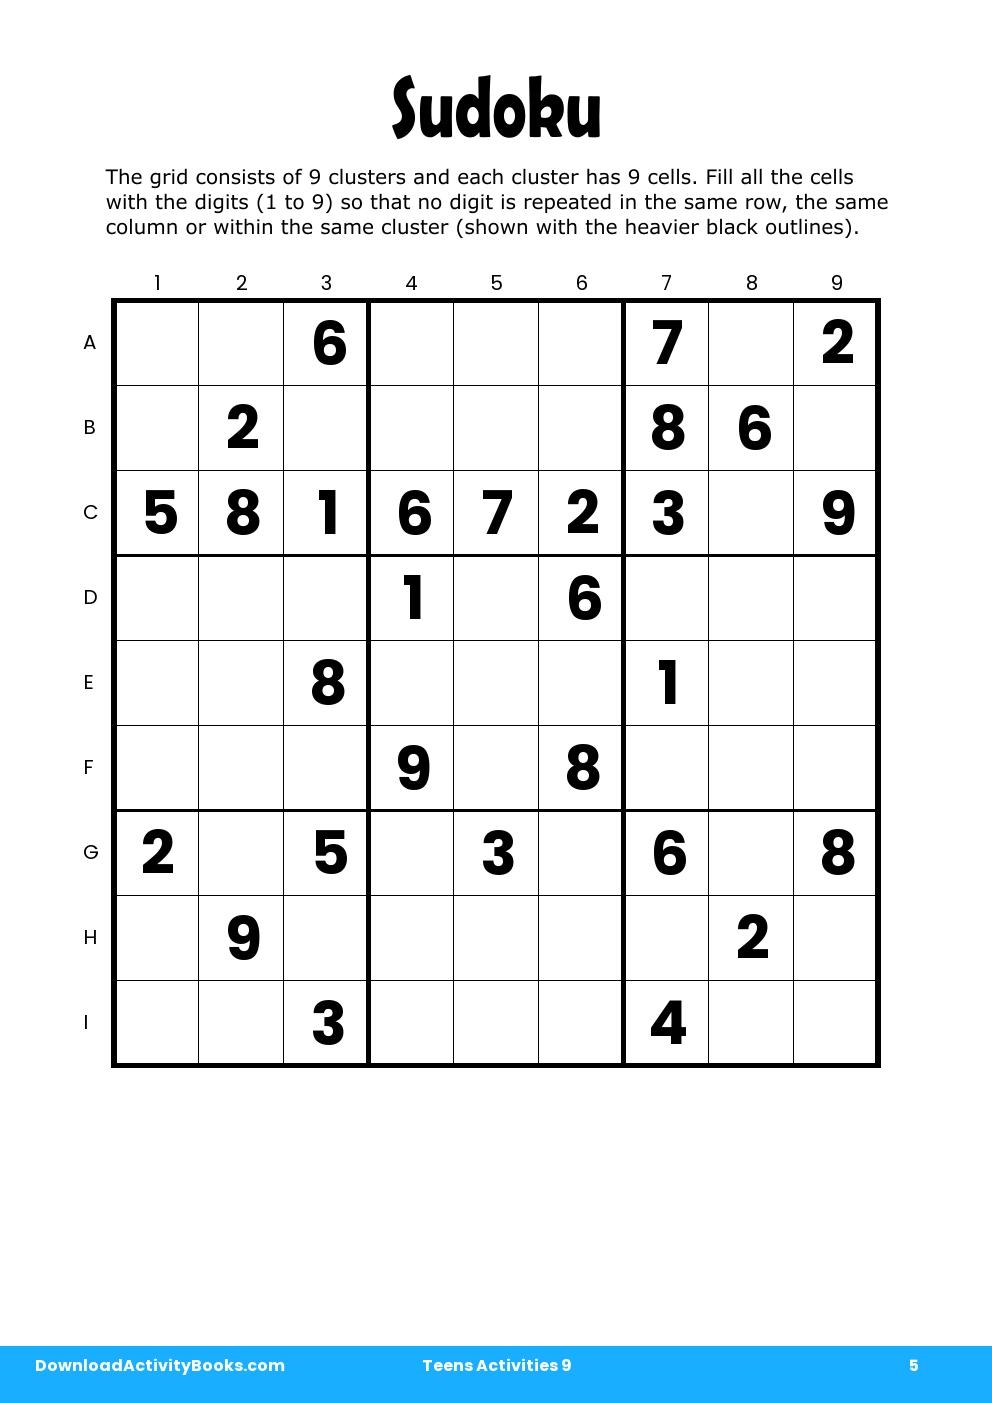 Sudoku in Teens Activities 9